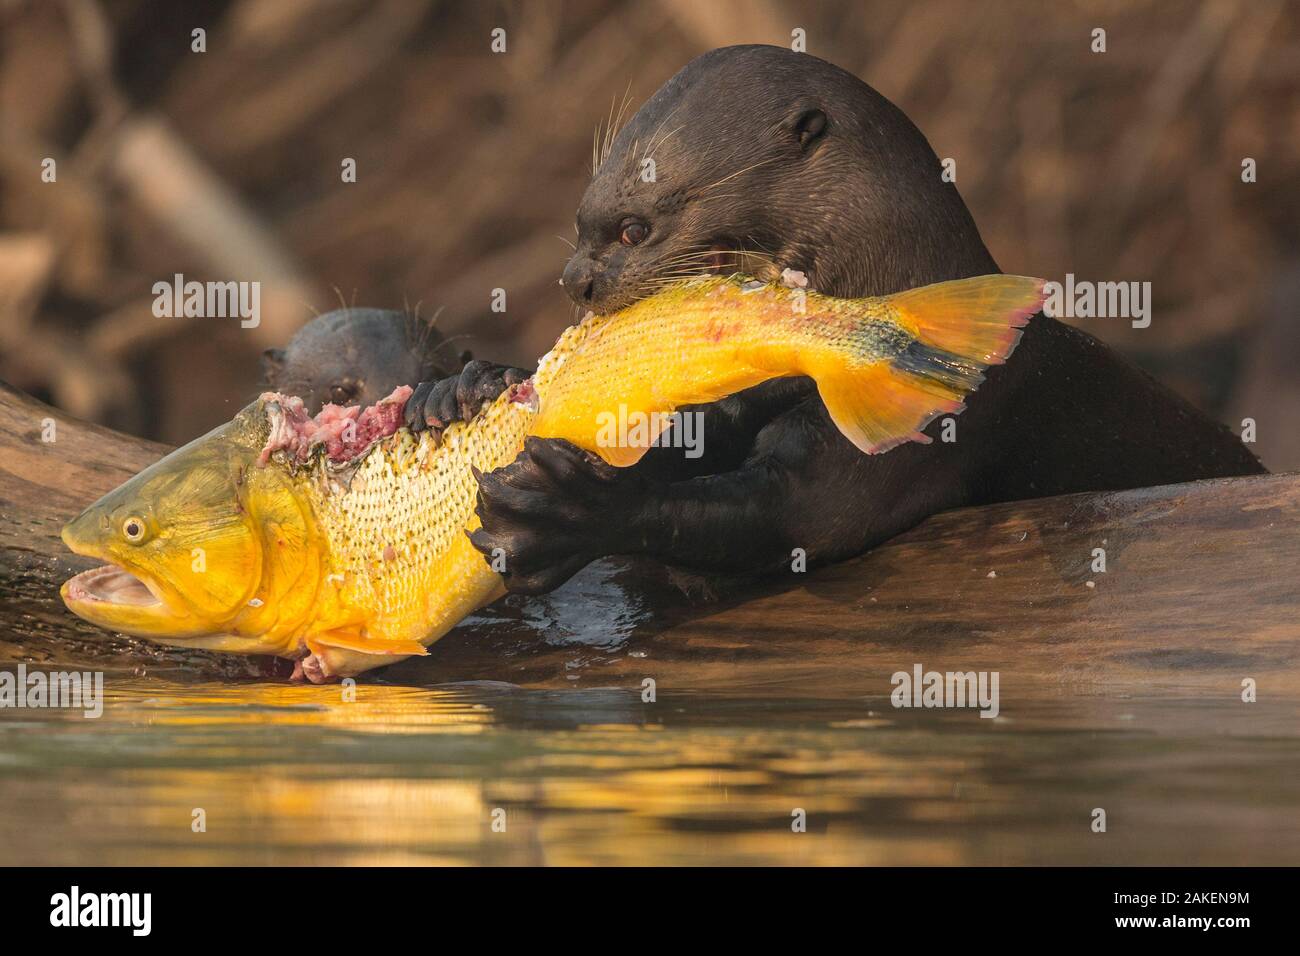 Giant otters (Pteronura brasiliensis) feed on a Golden dorado (Salminus brasiliensis) Pantanal, Brazil. Stock Photo